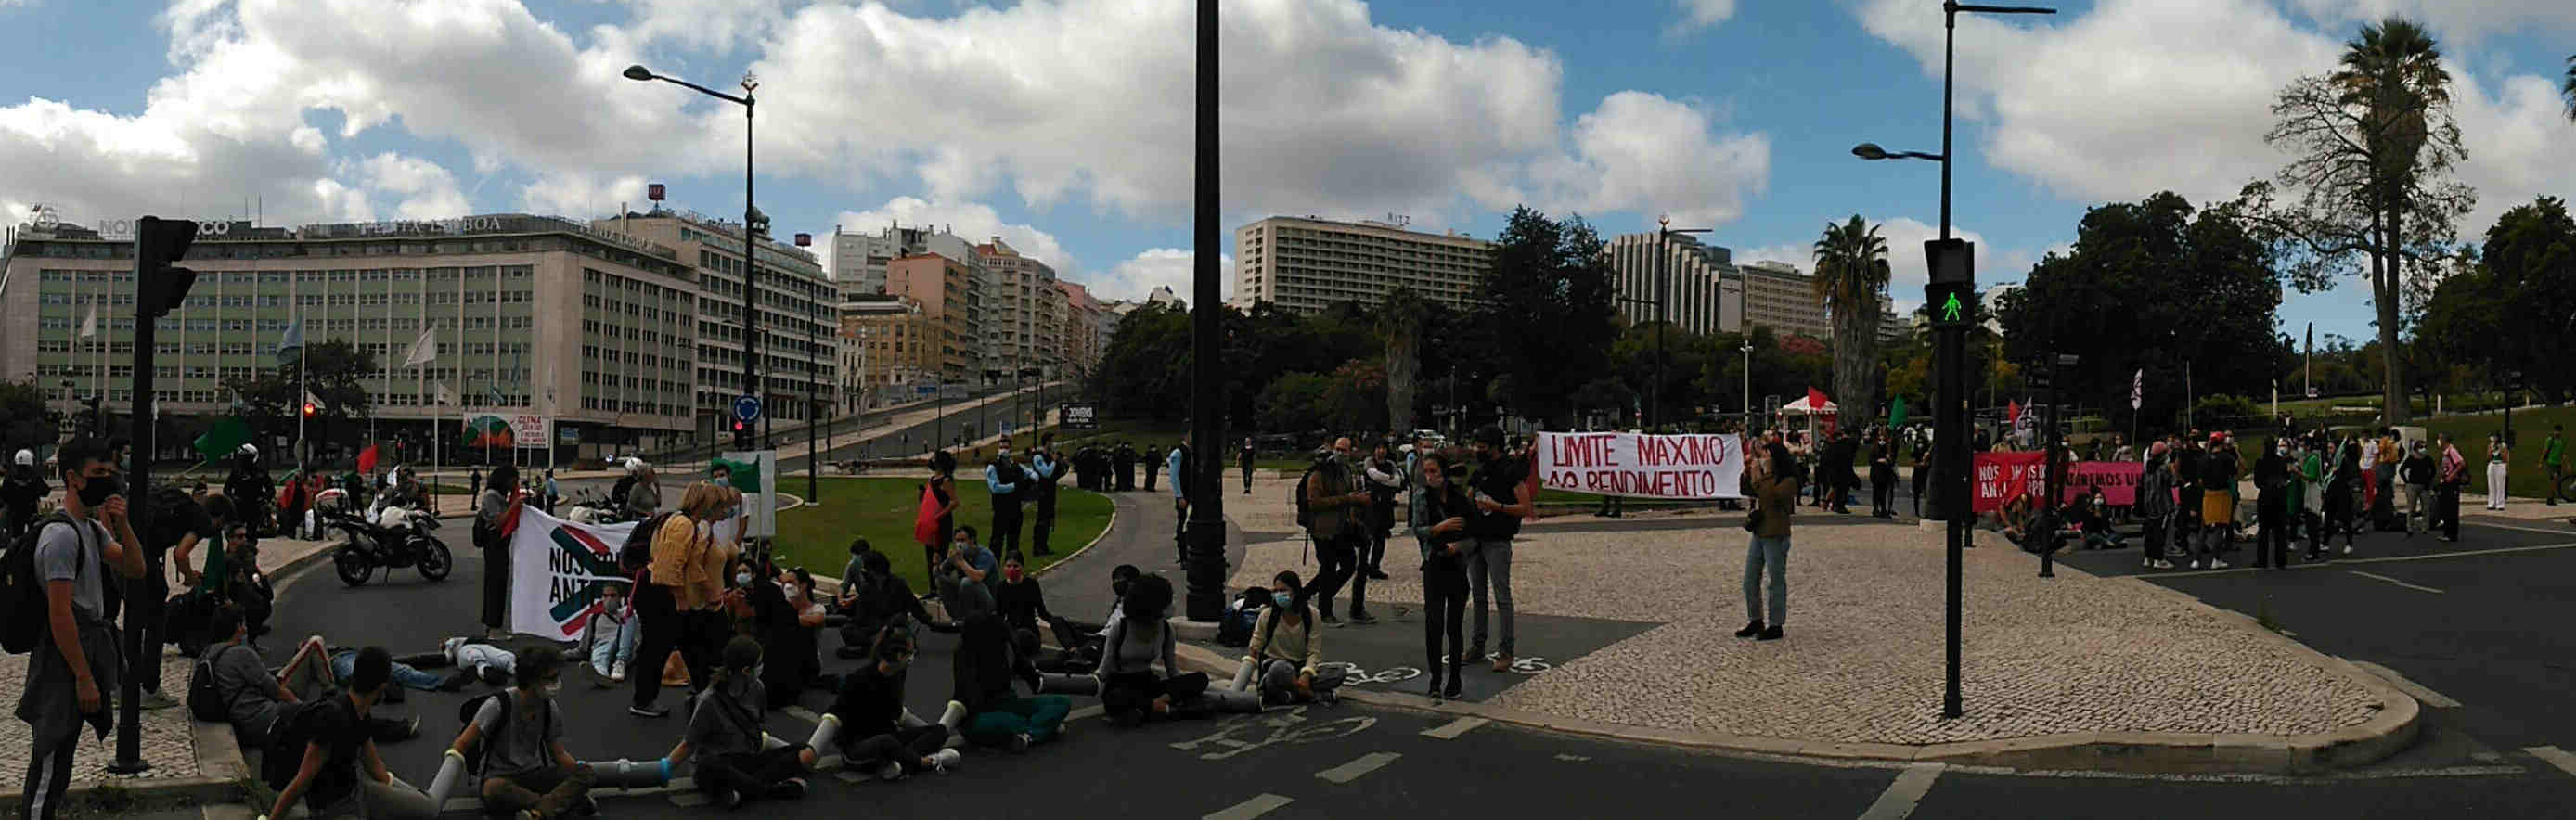 Protesto do Climáximo bloqueia a Praça Marquês de Pombal em Lisboa